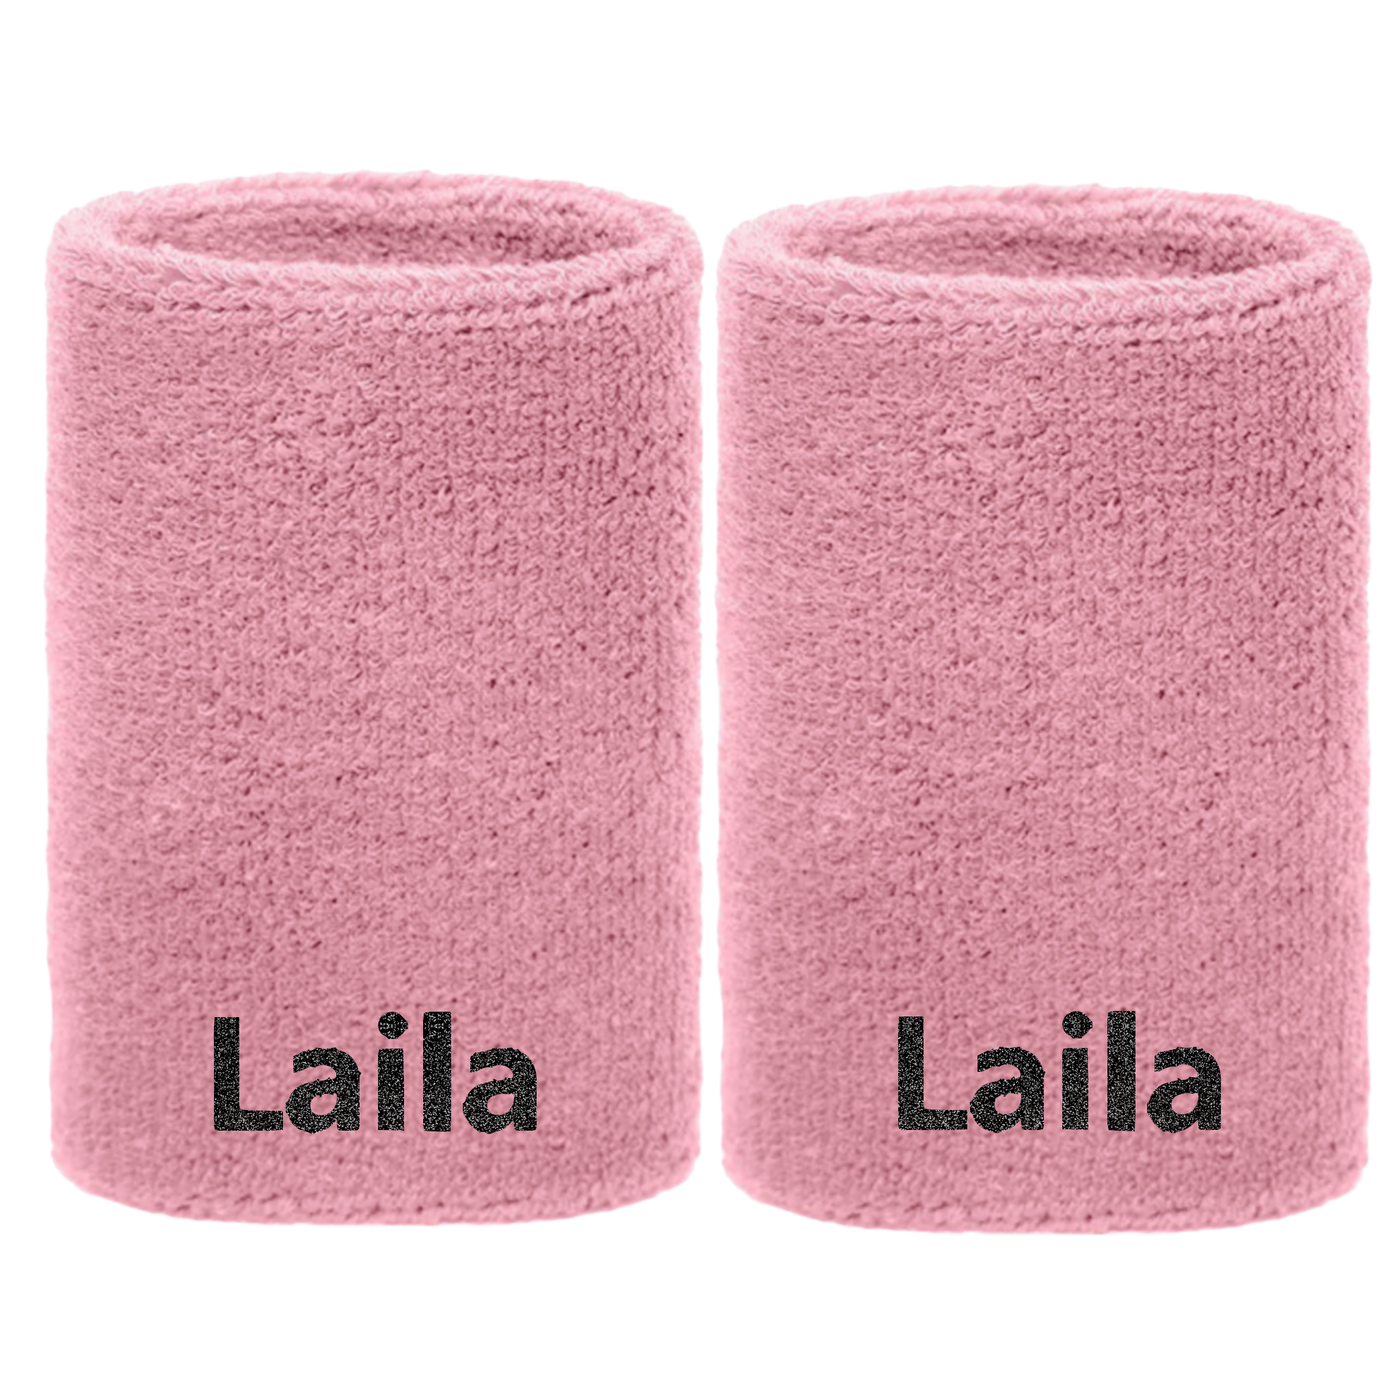 Schweißbänder rosa mit Namen